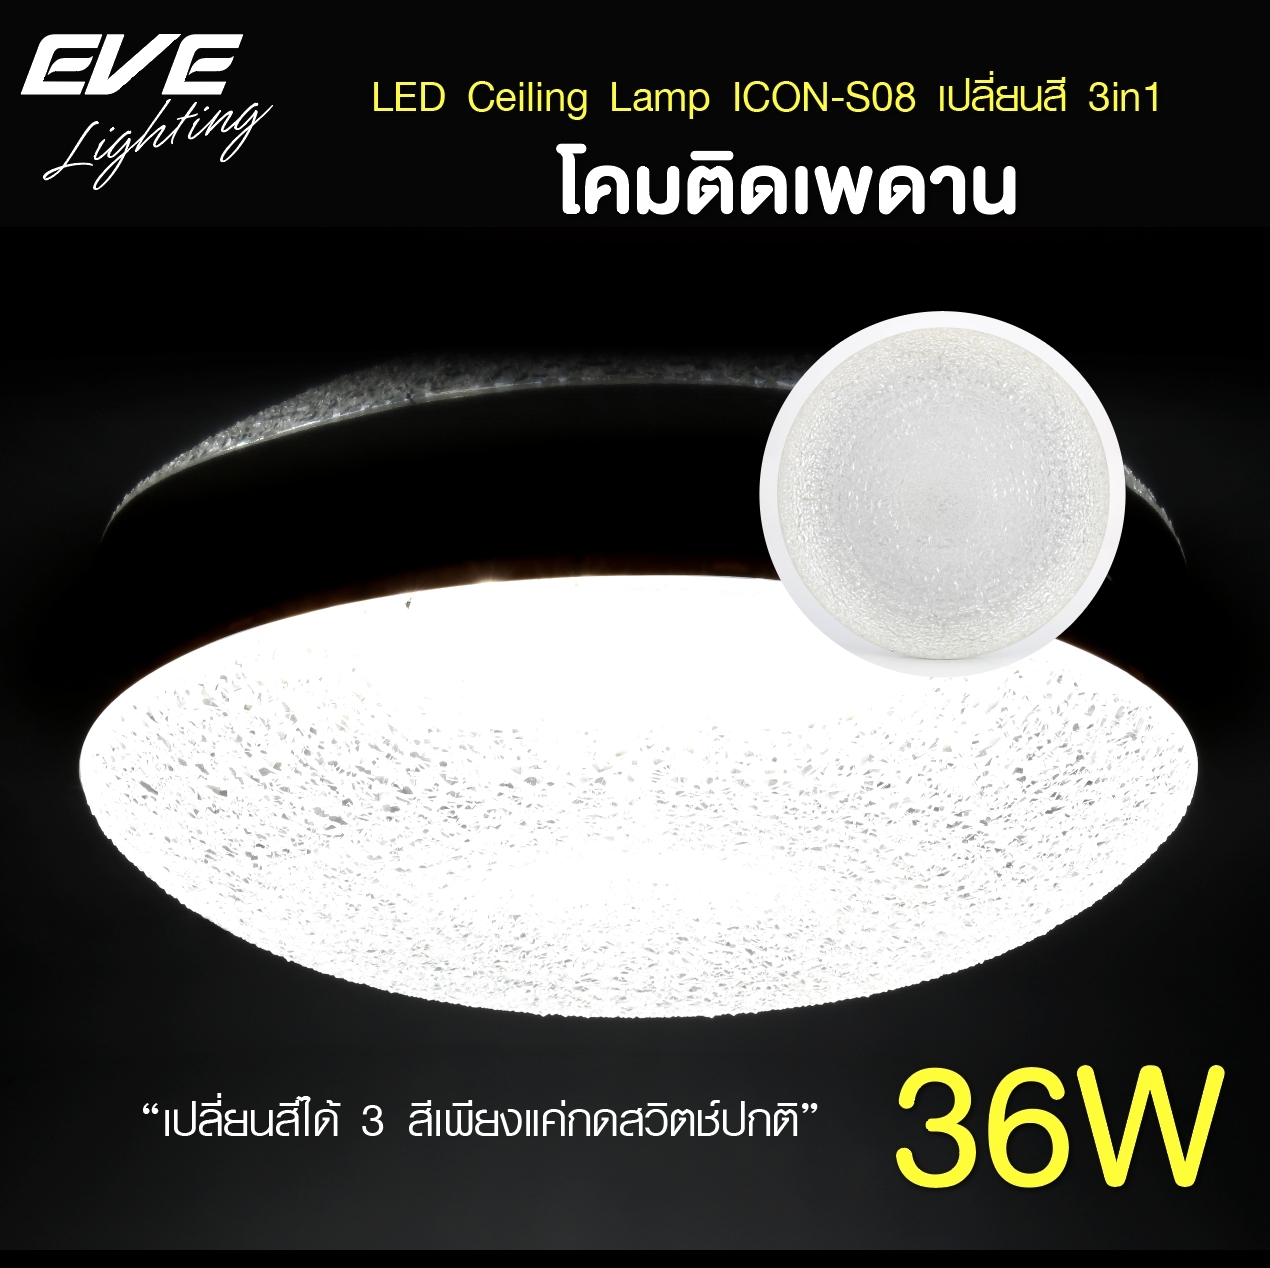 EVE โคมไฟติดเพดาน เปลี่ยนสีได้ 3 สี โคมติดเพดาน แอลอีดี ติดลอย รุ่น ICON S08 ขนาด 36W แสงขาว ขาวนวล เหลือง